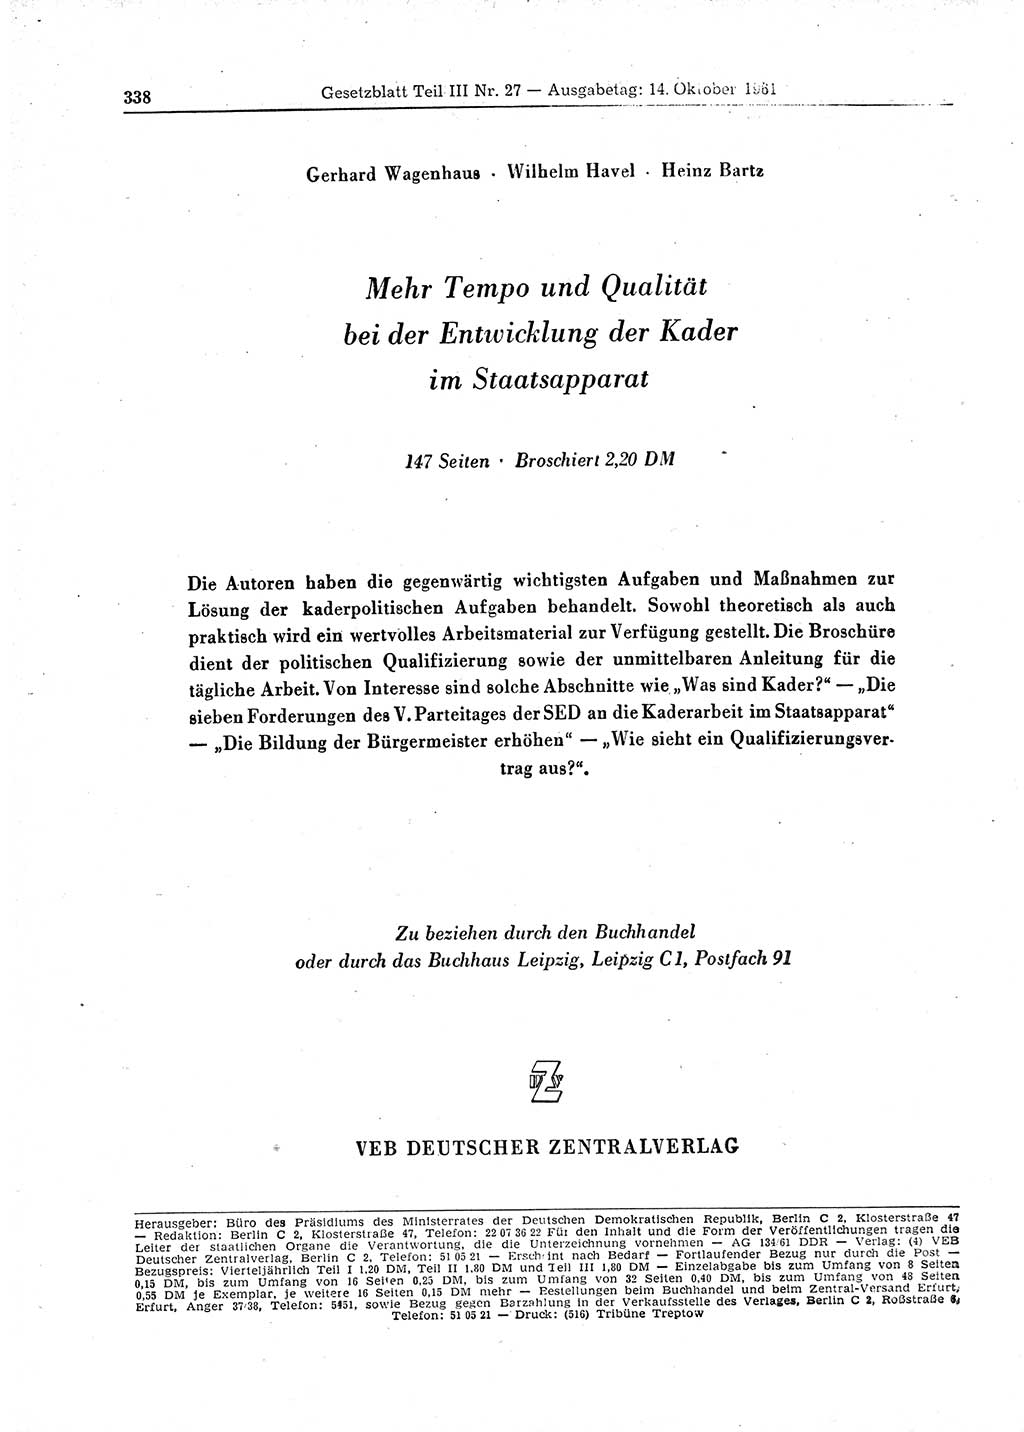 Gesetzblatt (GBl.) der Deutschen Demokratischen Republik (DDR) Teil ⅠⅠⅠ 1961, Seite 338 (GBl. DDR ⅠⅠⅠ 1961, S. 338)